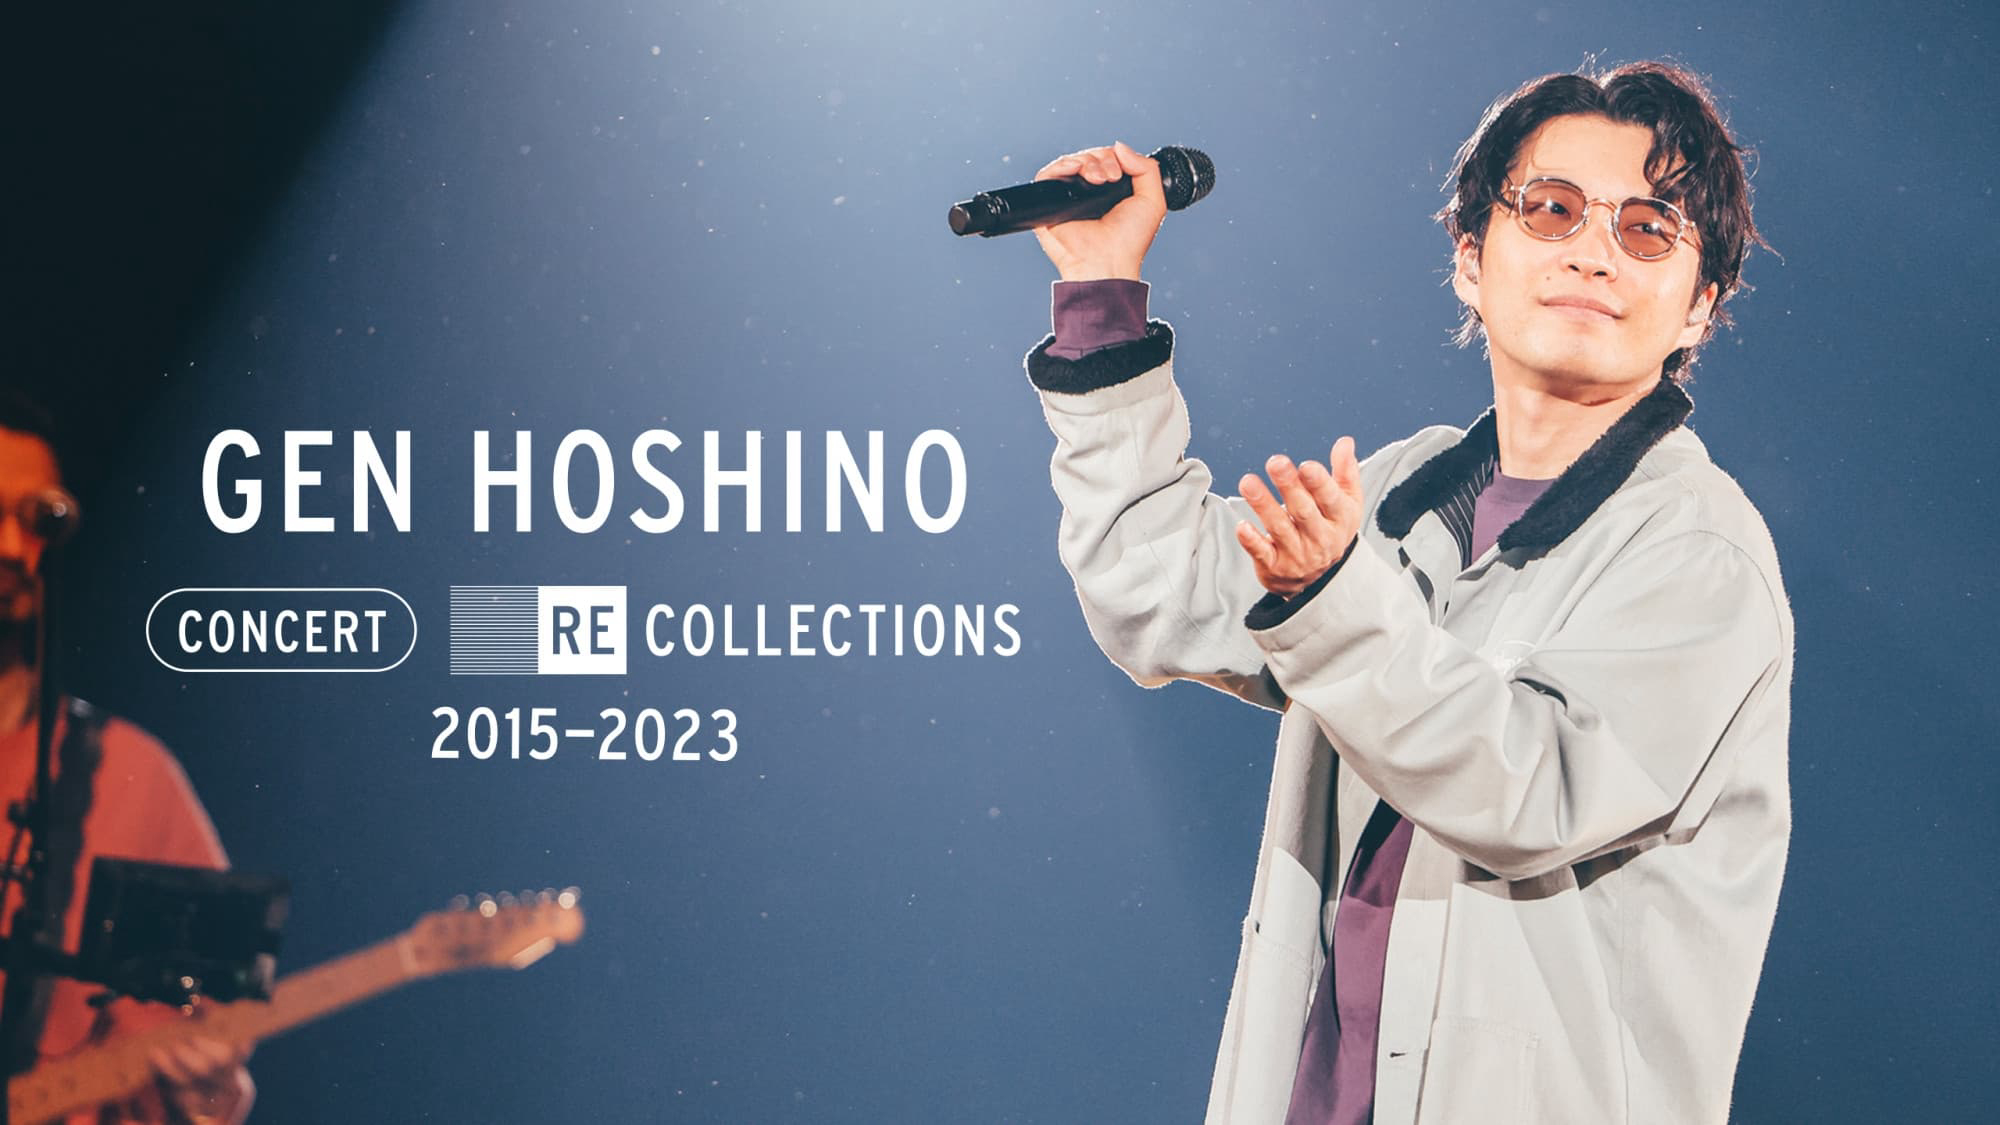 Xem Phim Hoshino Gen: Tuyển tập hòa nhạc 2015-2023, Gen Hoshino Concert Recollections 2015-2023 2023